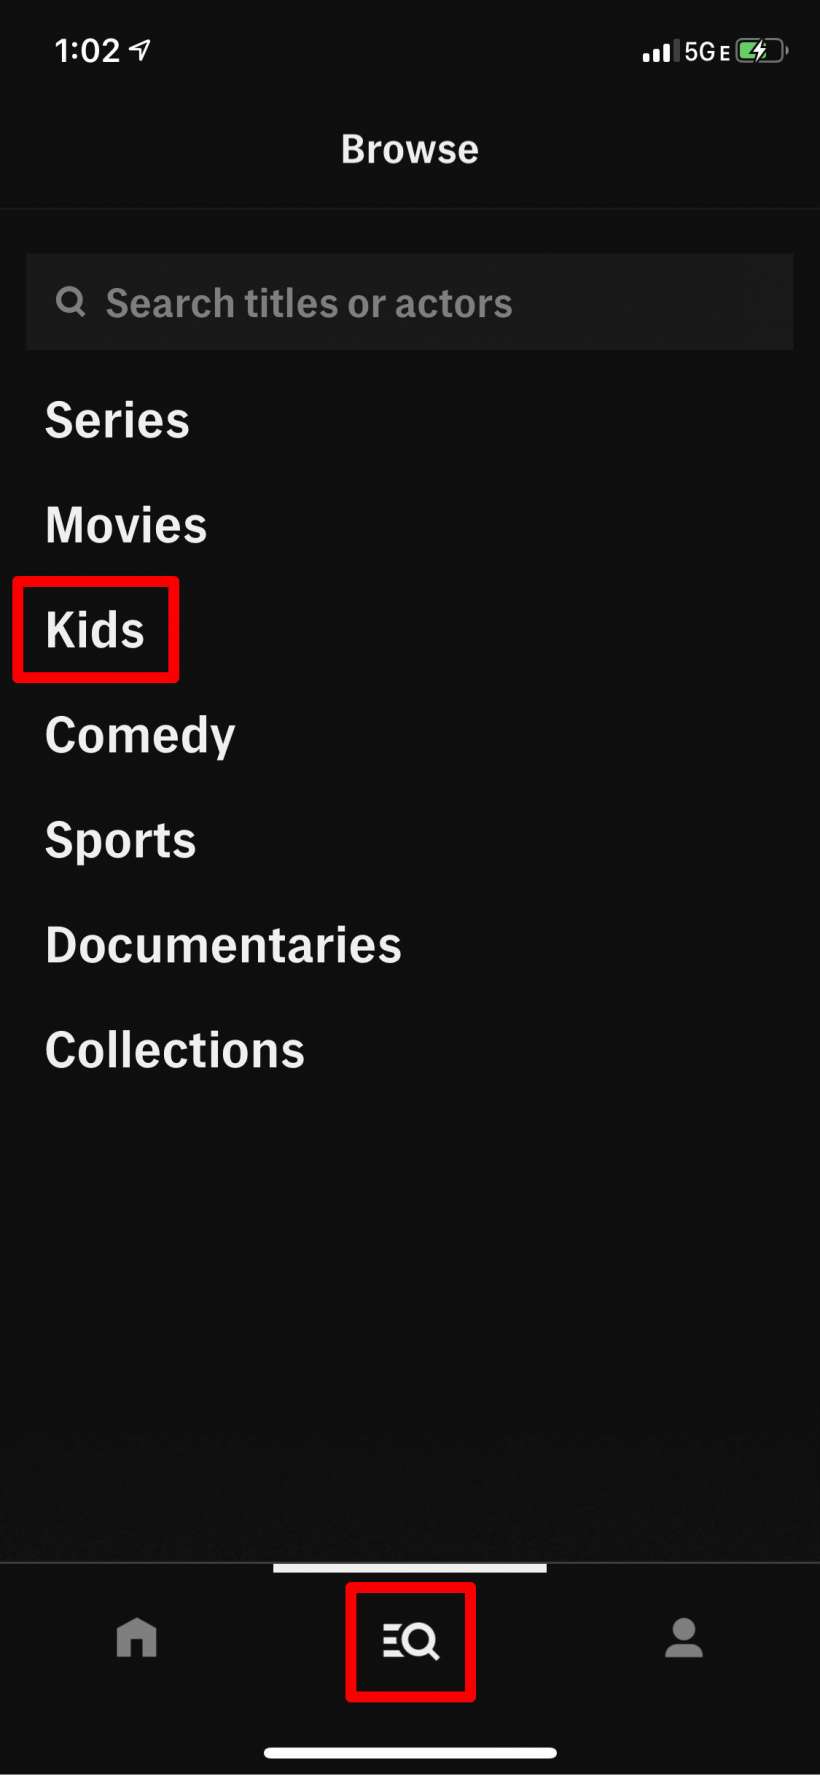 Cách sử dụng Khóa trẻ em và Kiểm soát của cha mẹ trên HBO Now trên iPhone và iPad.